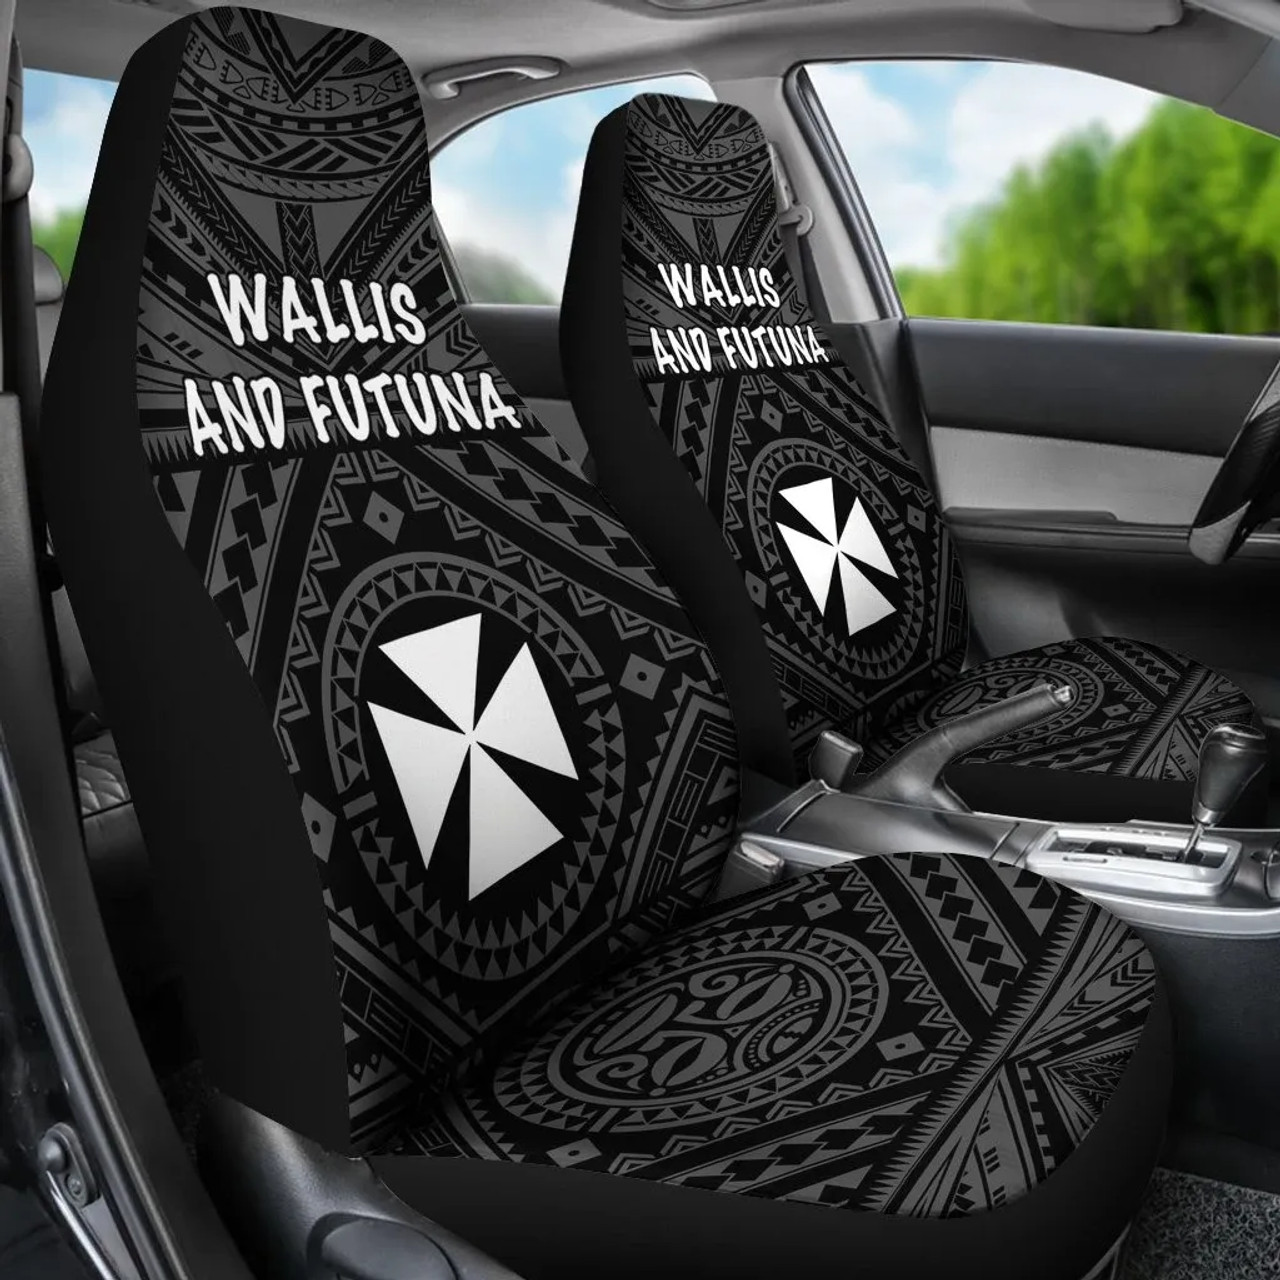 Wallis and Futuna Car Seat Covers - Wallis and Futuna Seal With Polynesian Tattoo Style